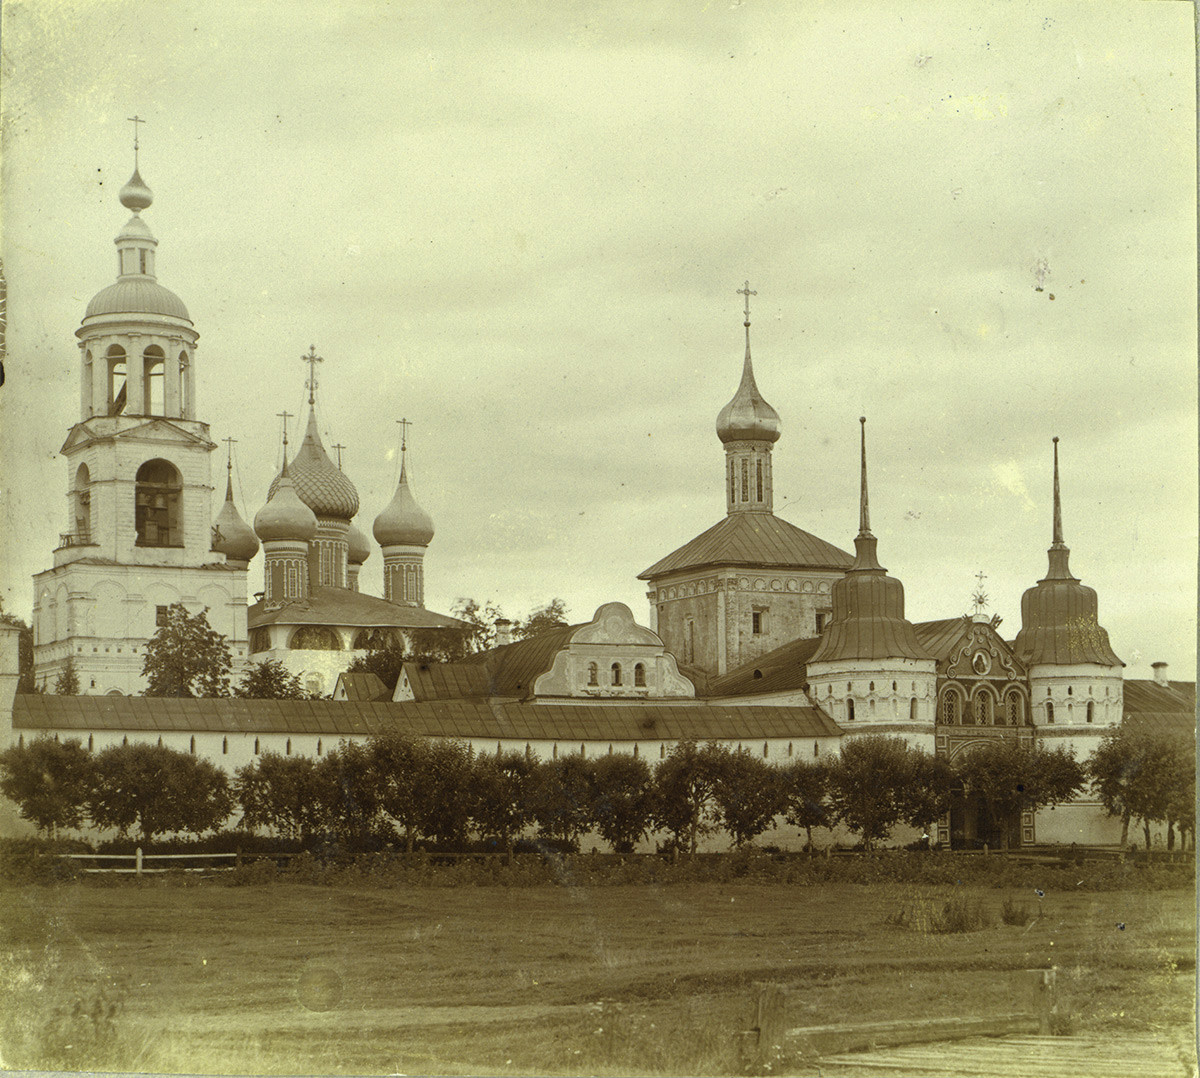 Monasterio de Tolga, muro oeste, vista noroeste. Desde la izquierda: campanario; Catedral de la Presentación; Iglesia de San Nicolás; Puerta Santa. 1910